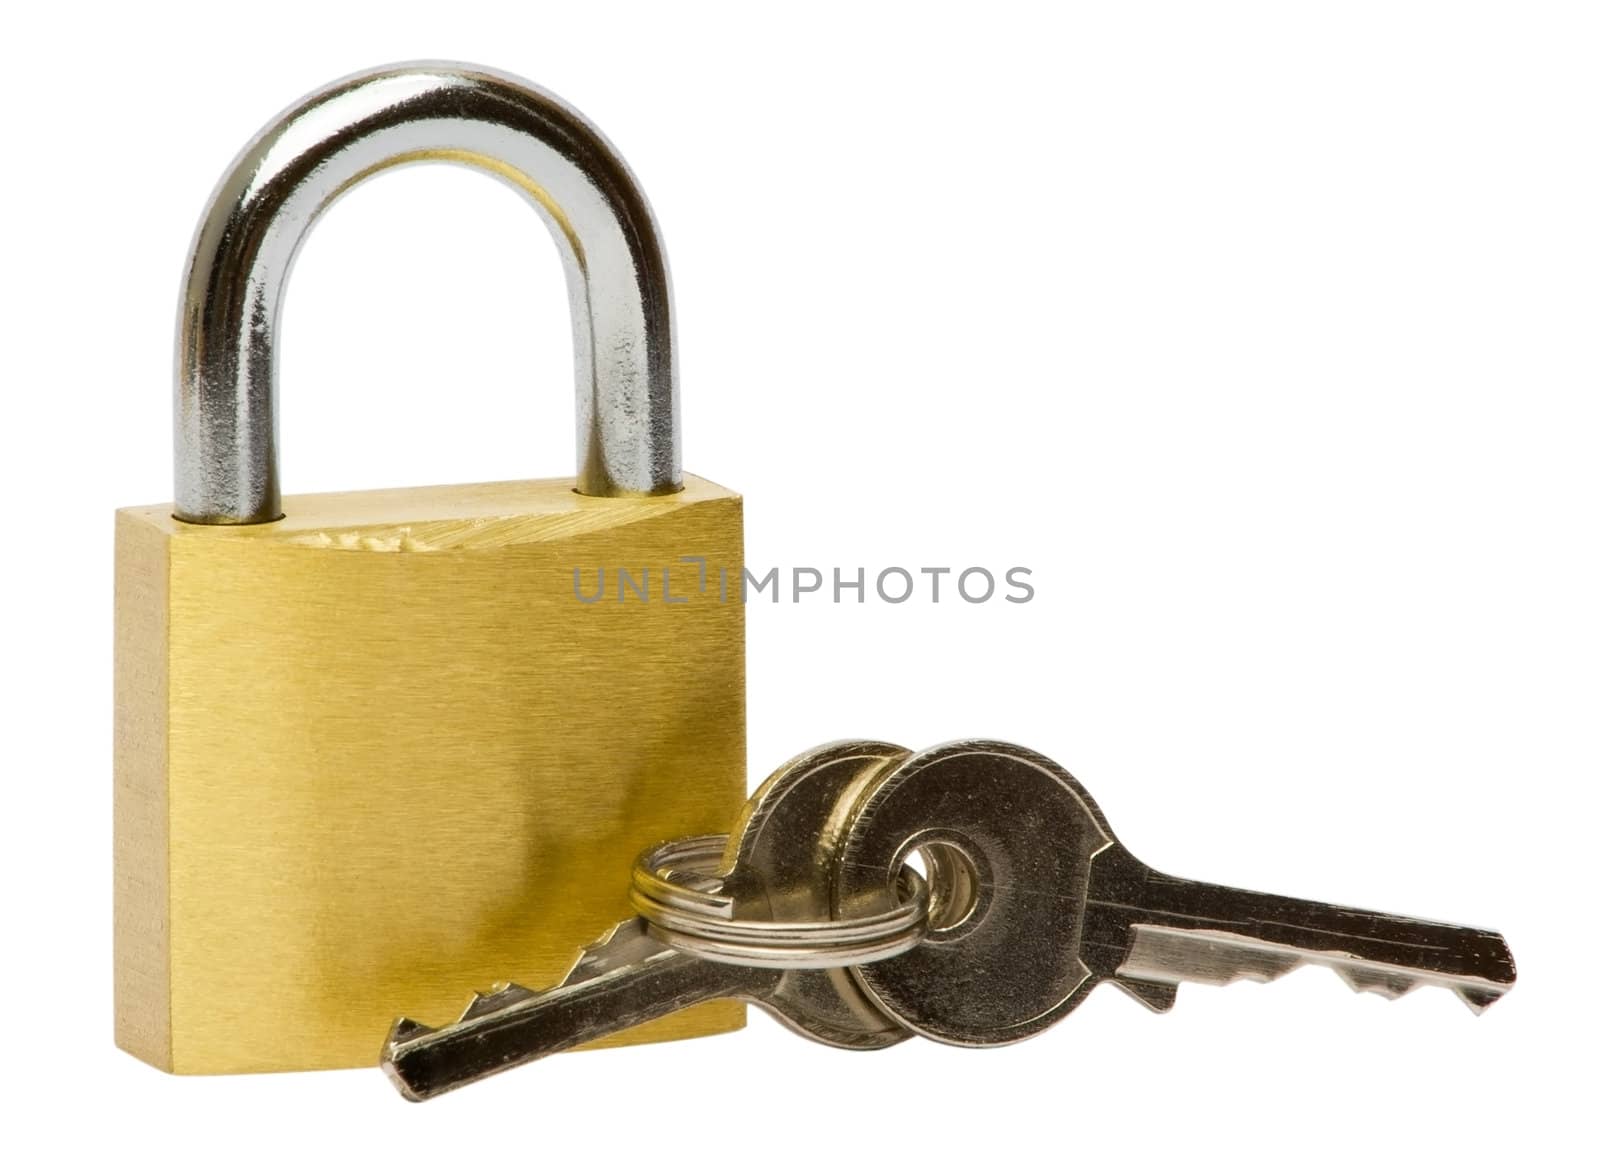 Lock & key
